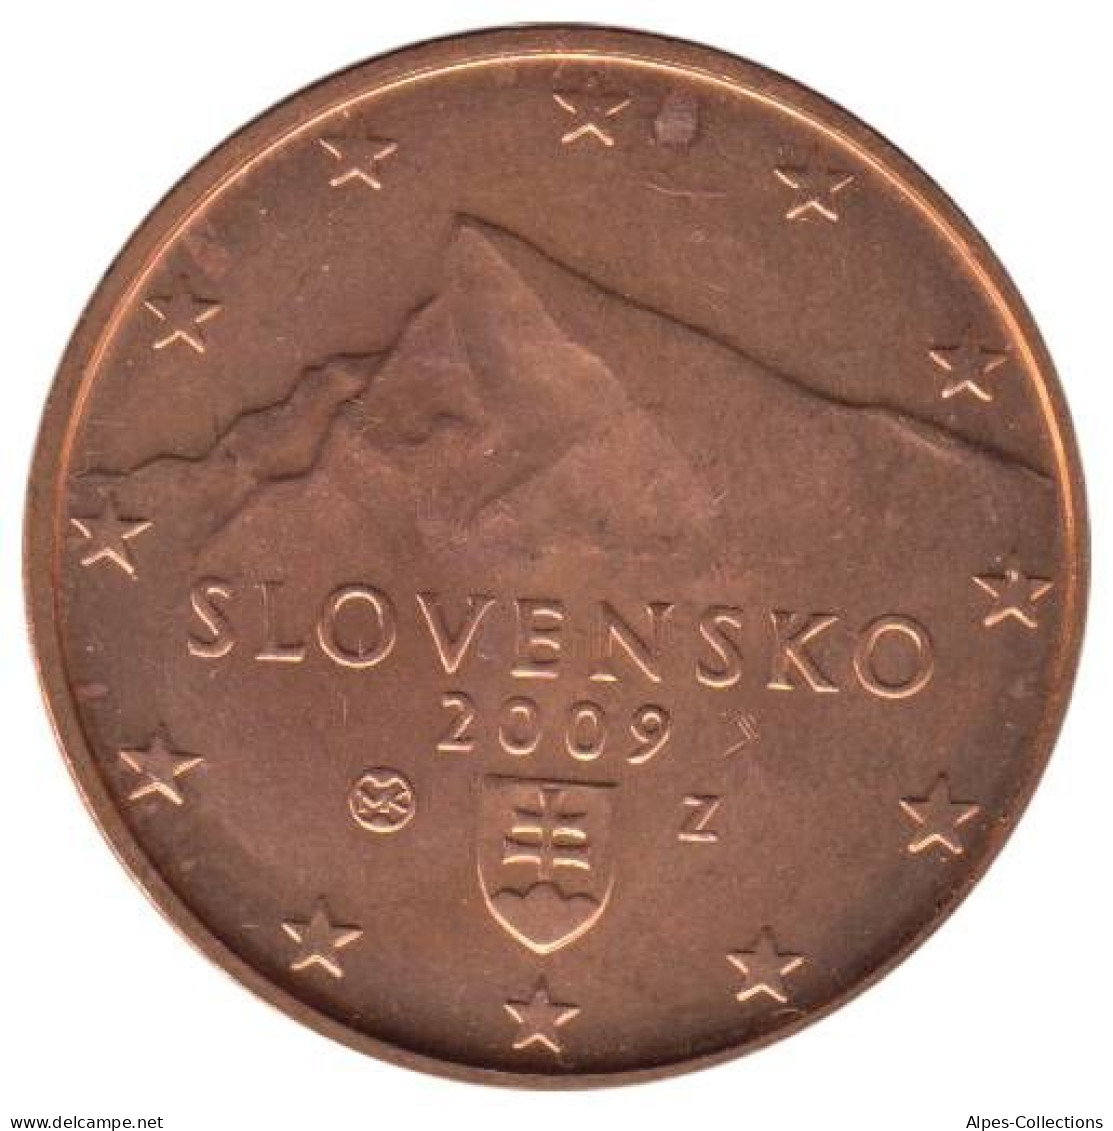 SQ00509.1 - SLOVAQUIE - 5 Cents - 2009 - Slovakia